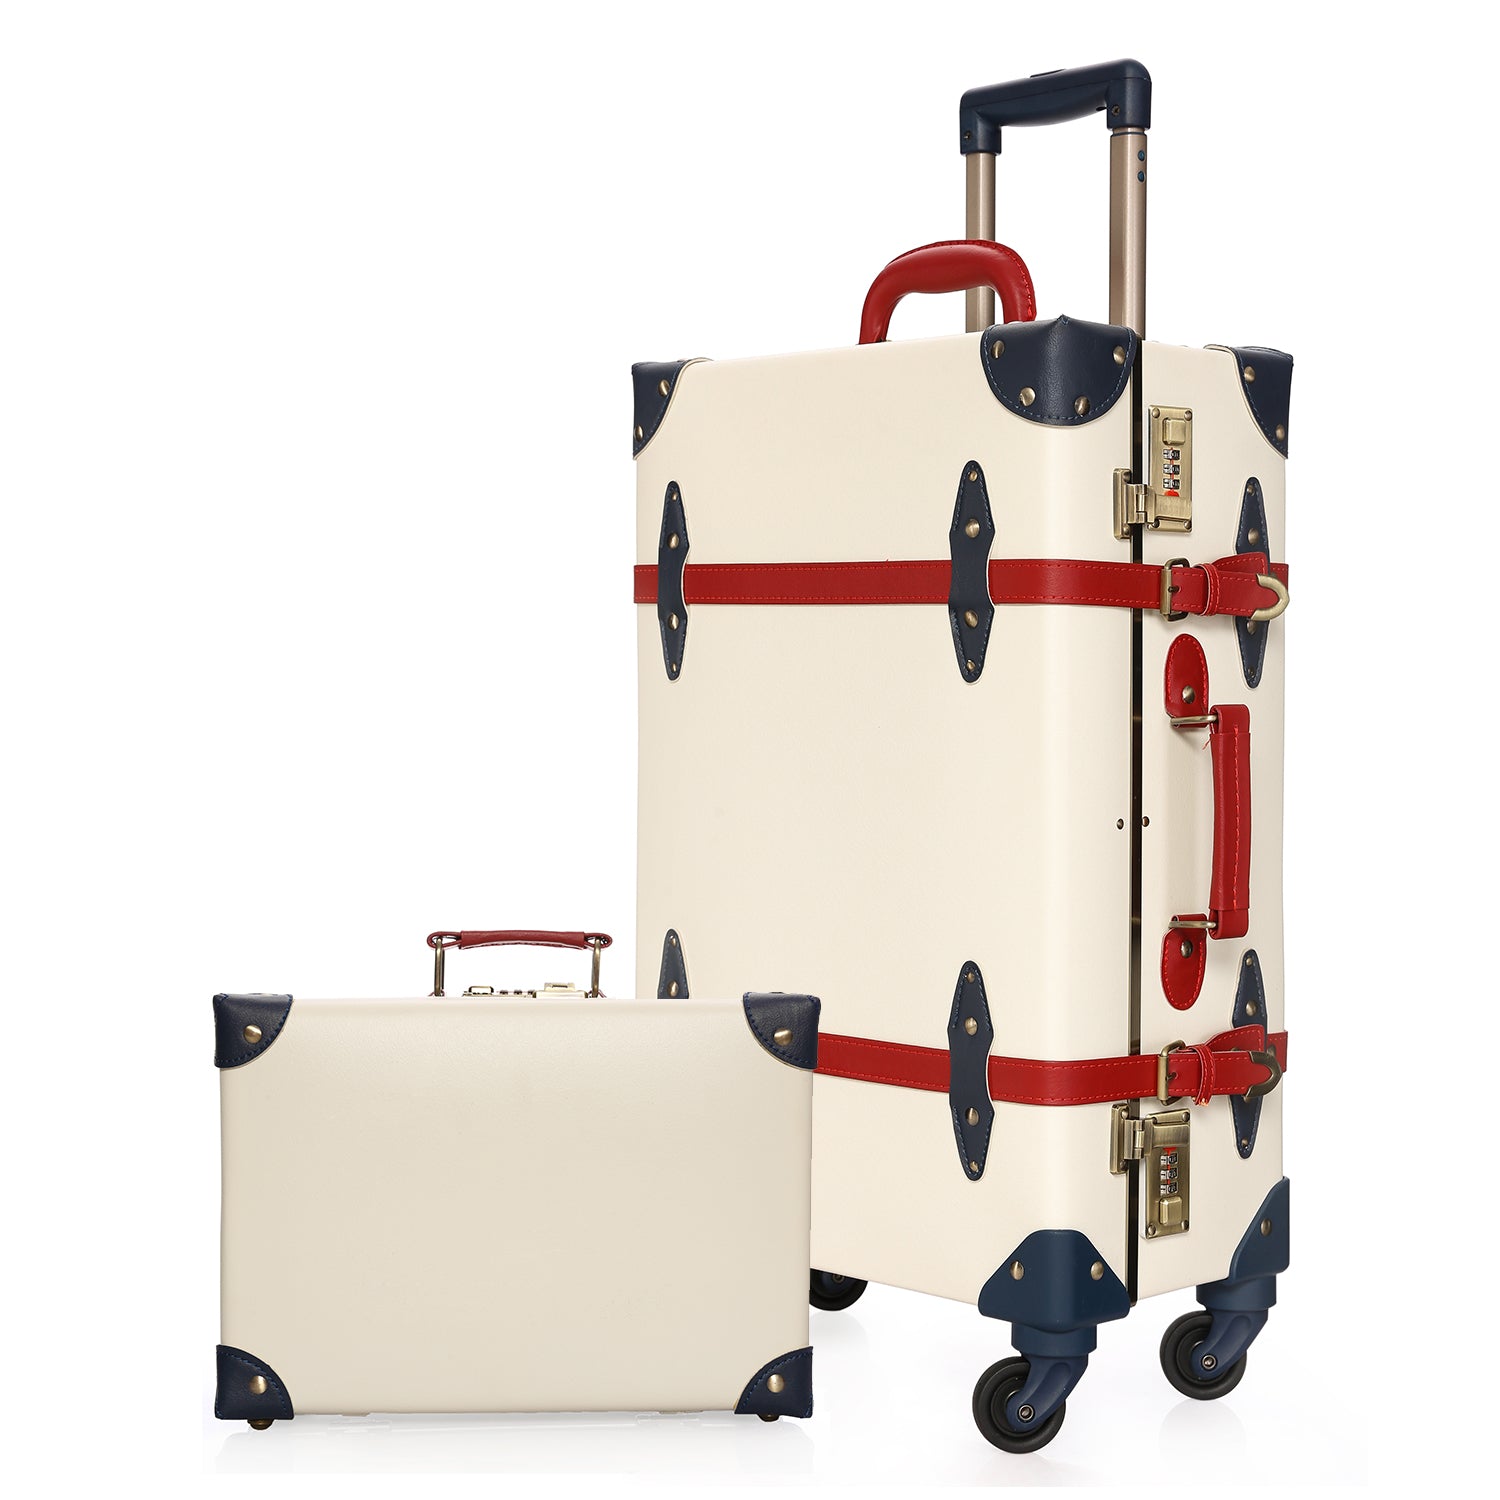 urecity vintage suitcase set for women, vintage luggage sets for